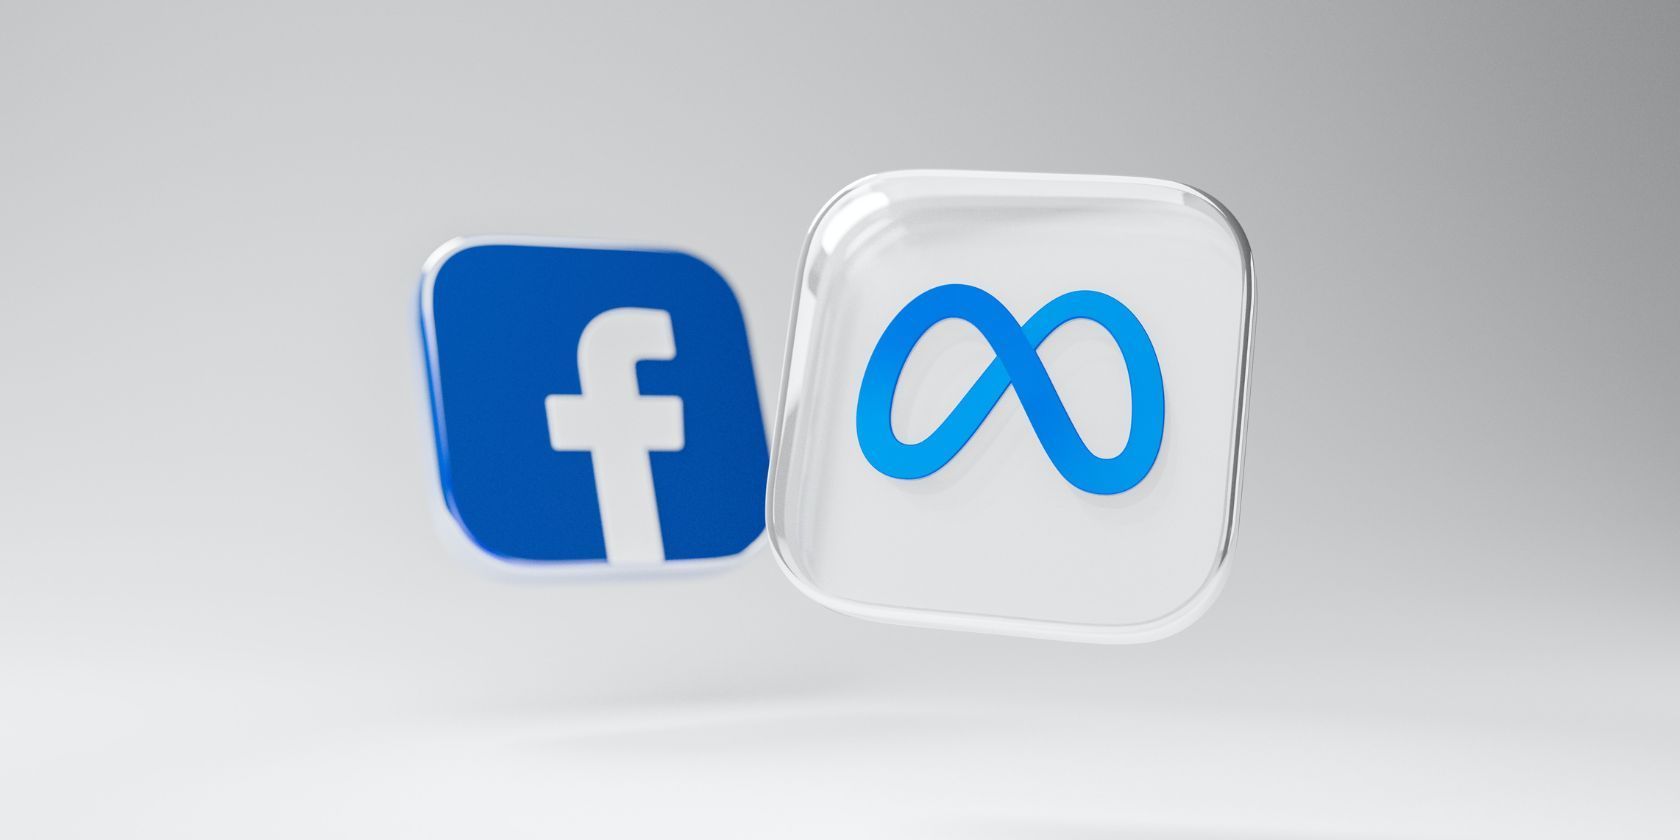 meta and facebook logos